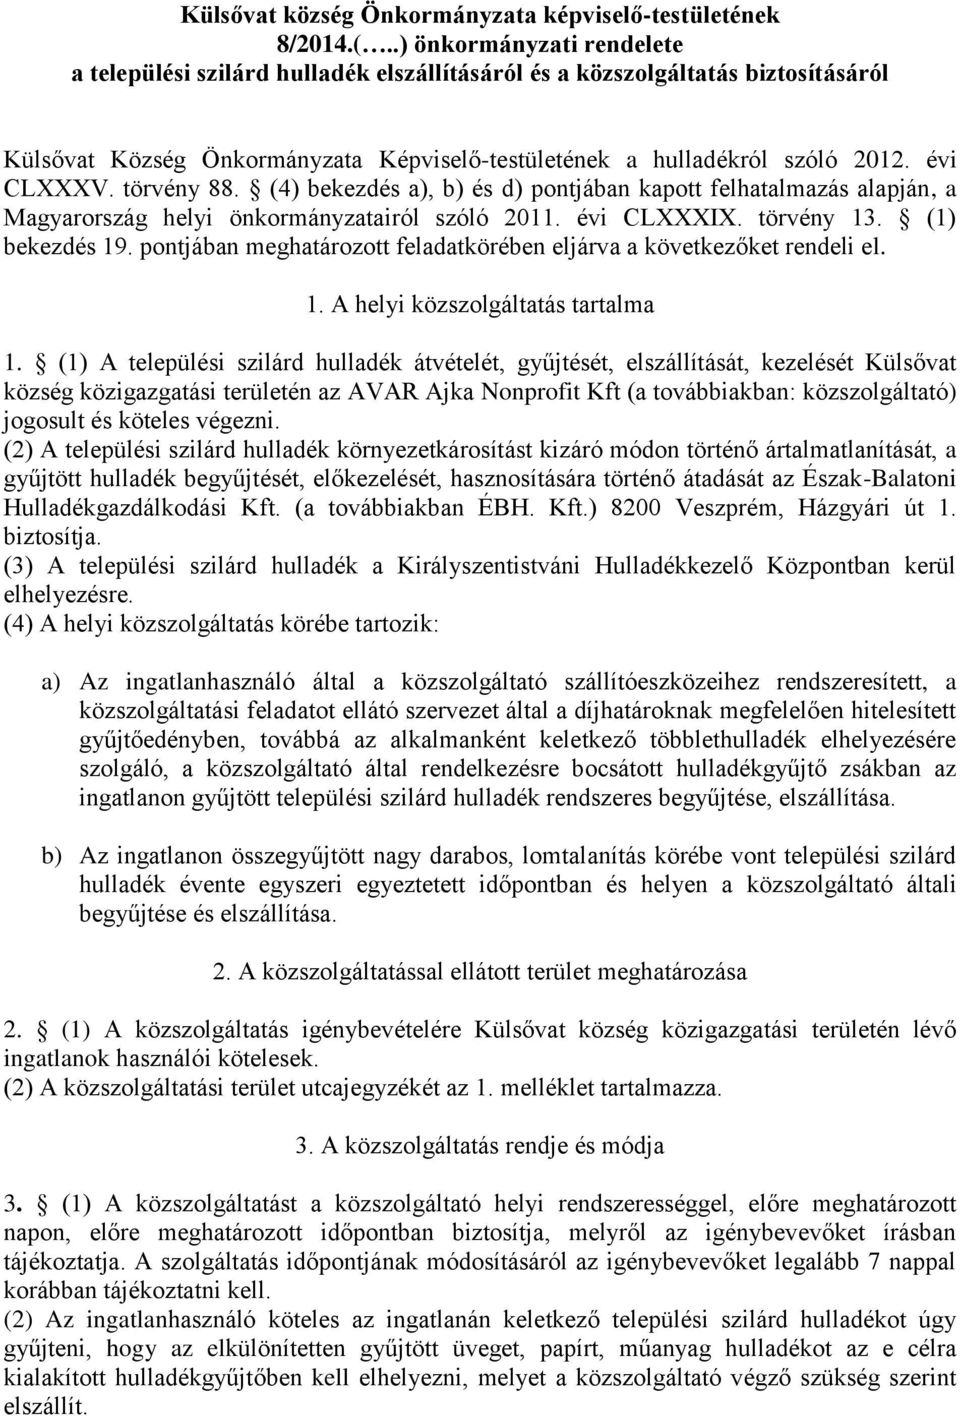 törvény 88. (4) bekezdés a), b) és d) pontjában kapott felhatalmazás alapján, a Magyarország helyi önkormányzatairól szóló 2011. évi CLXXXIX. törvény 13. (1) bekezdés 19.